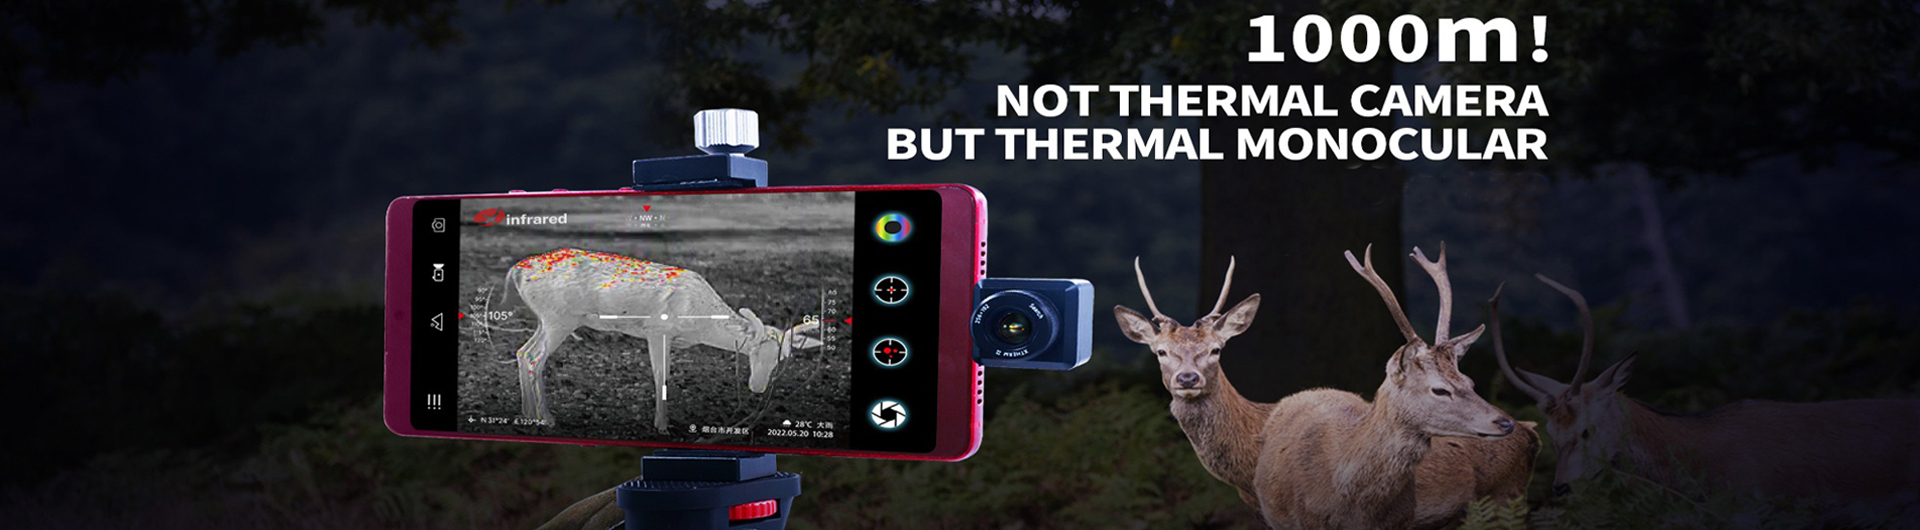 mobile phone thermal imaging camera